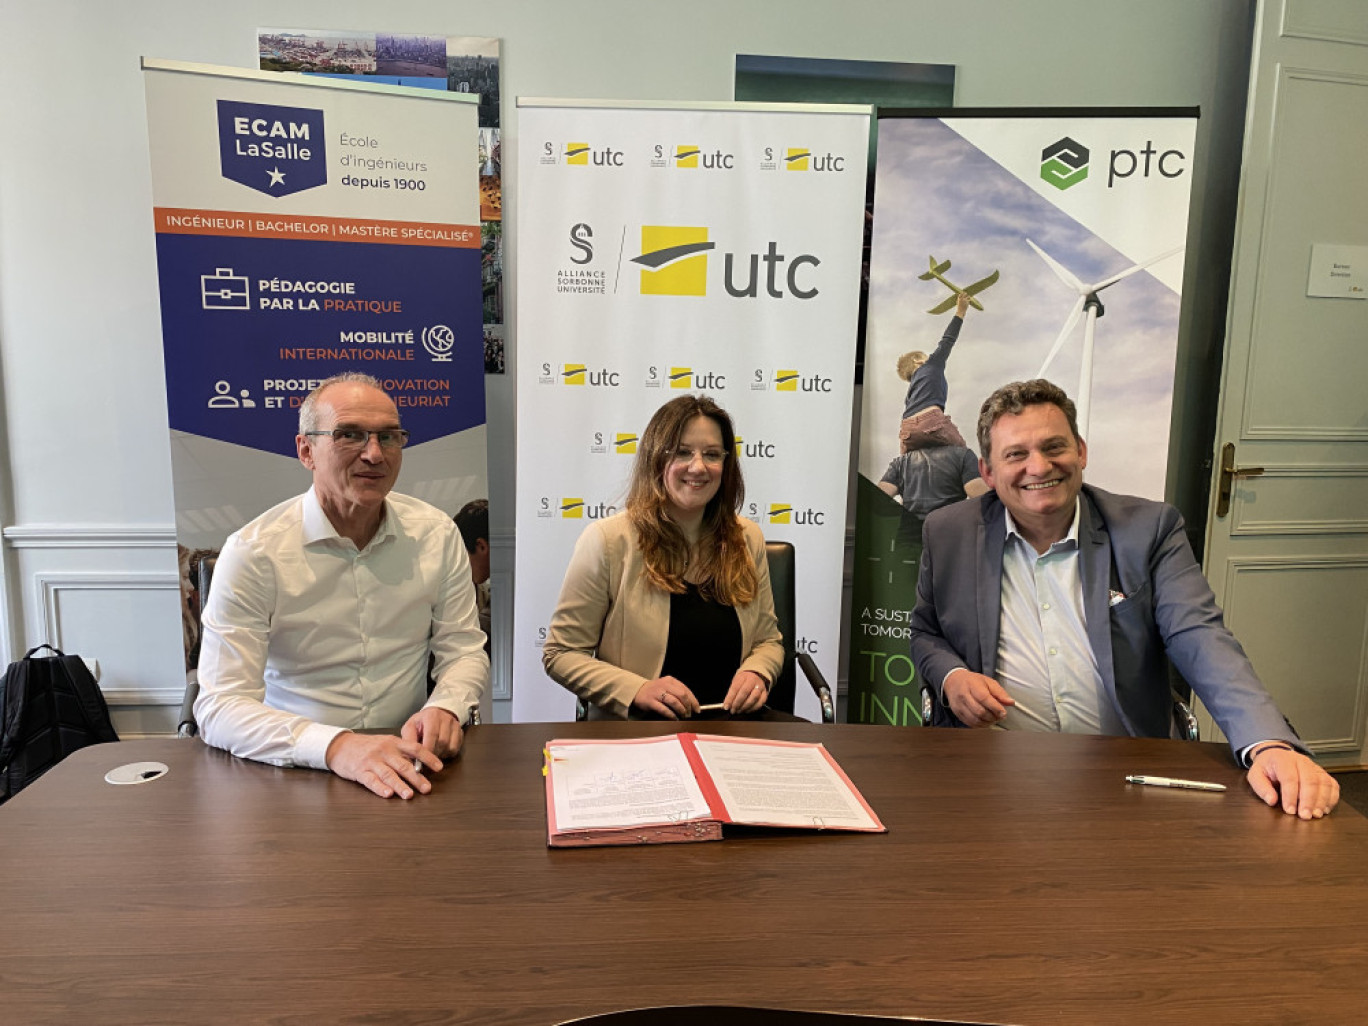 Signature de la convention entre Claire Rossi, directrice de l'UTC, Didier Desplanche, directeur de l’ECAM LaSalle et PTC.